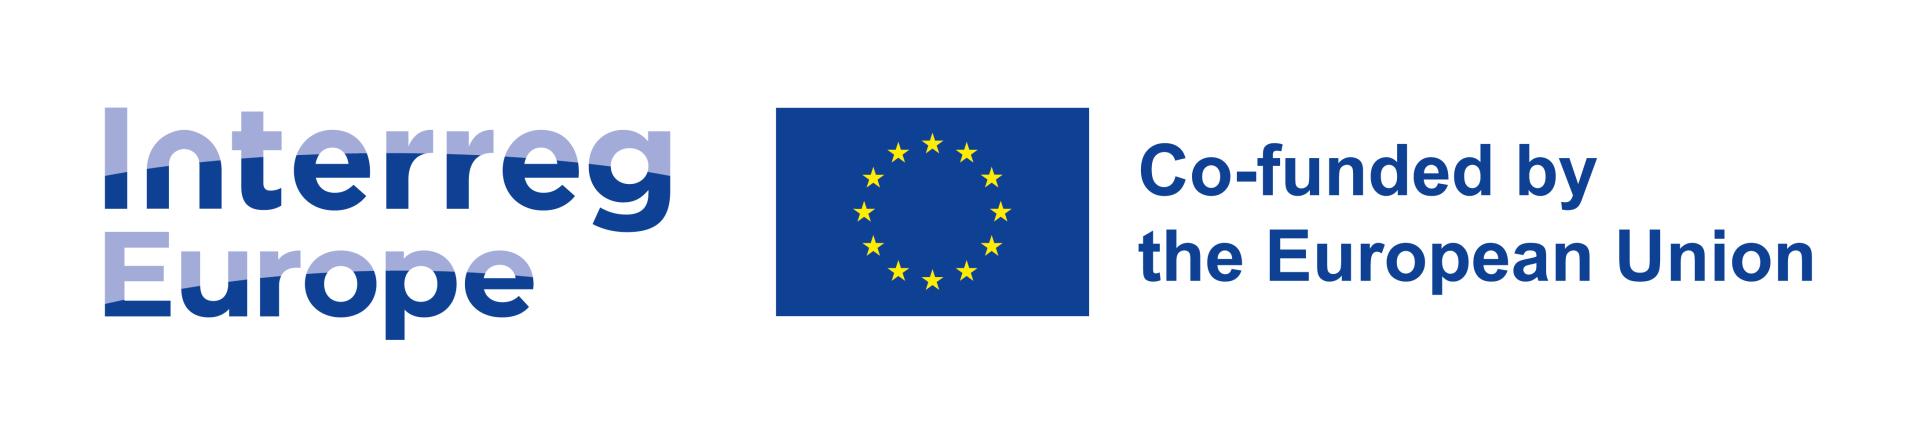 Pierwszy nabór wniosków Interreg Europa 2021-2027. Narzędzia dla wnioskodawców - zobacz więcej